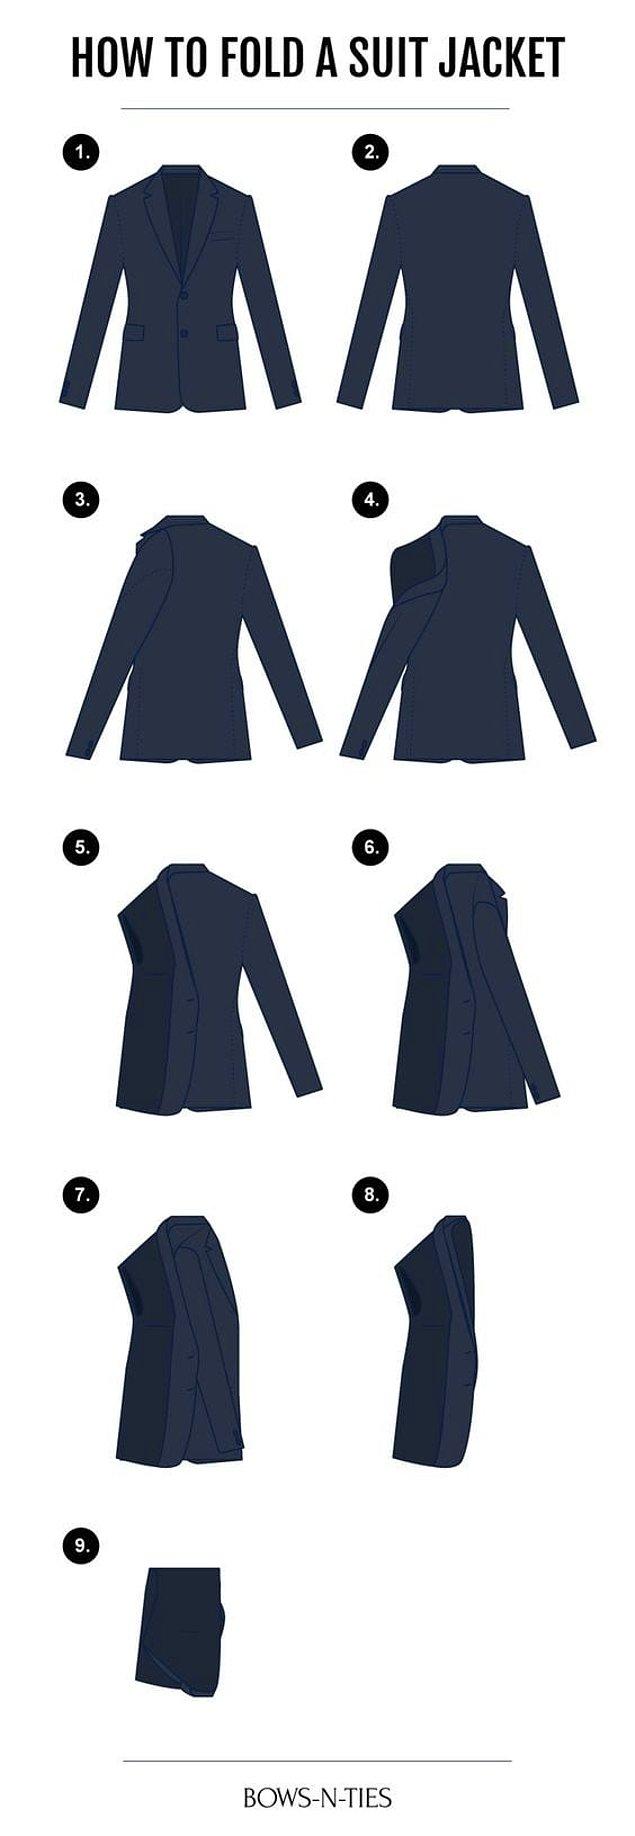 19. Eğer takım elbisenizle seyahat ediyorsanız, işte ceketi katlamanın doğru yolu: